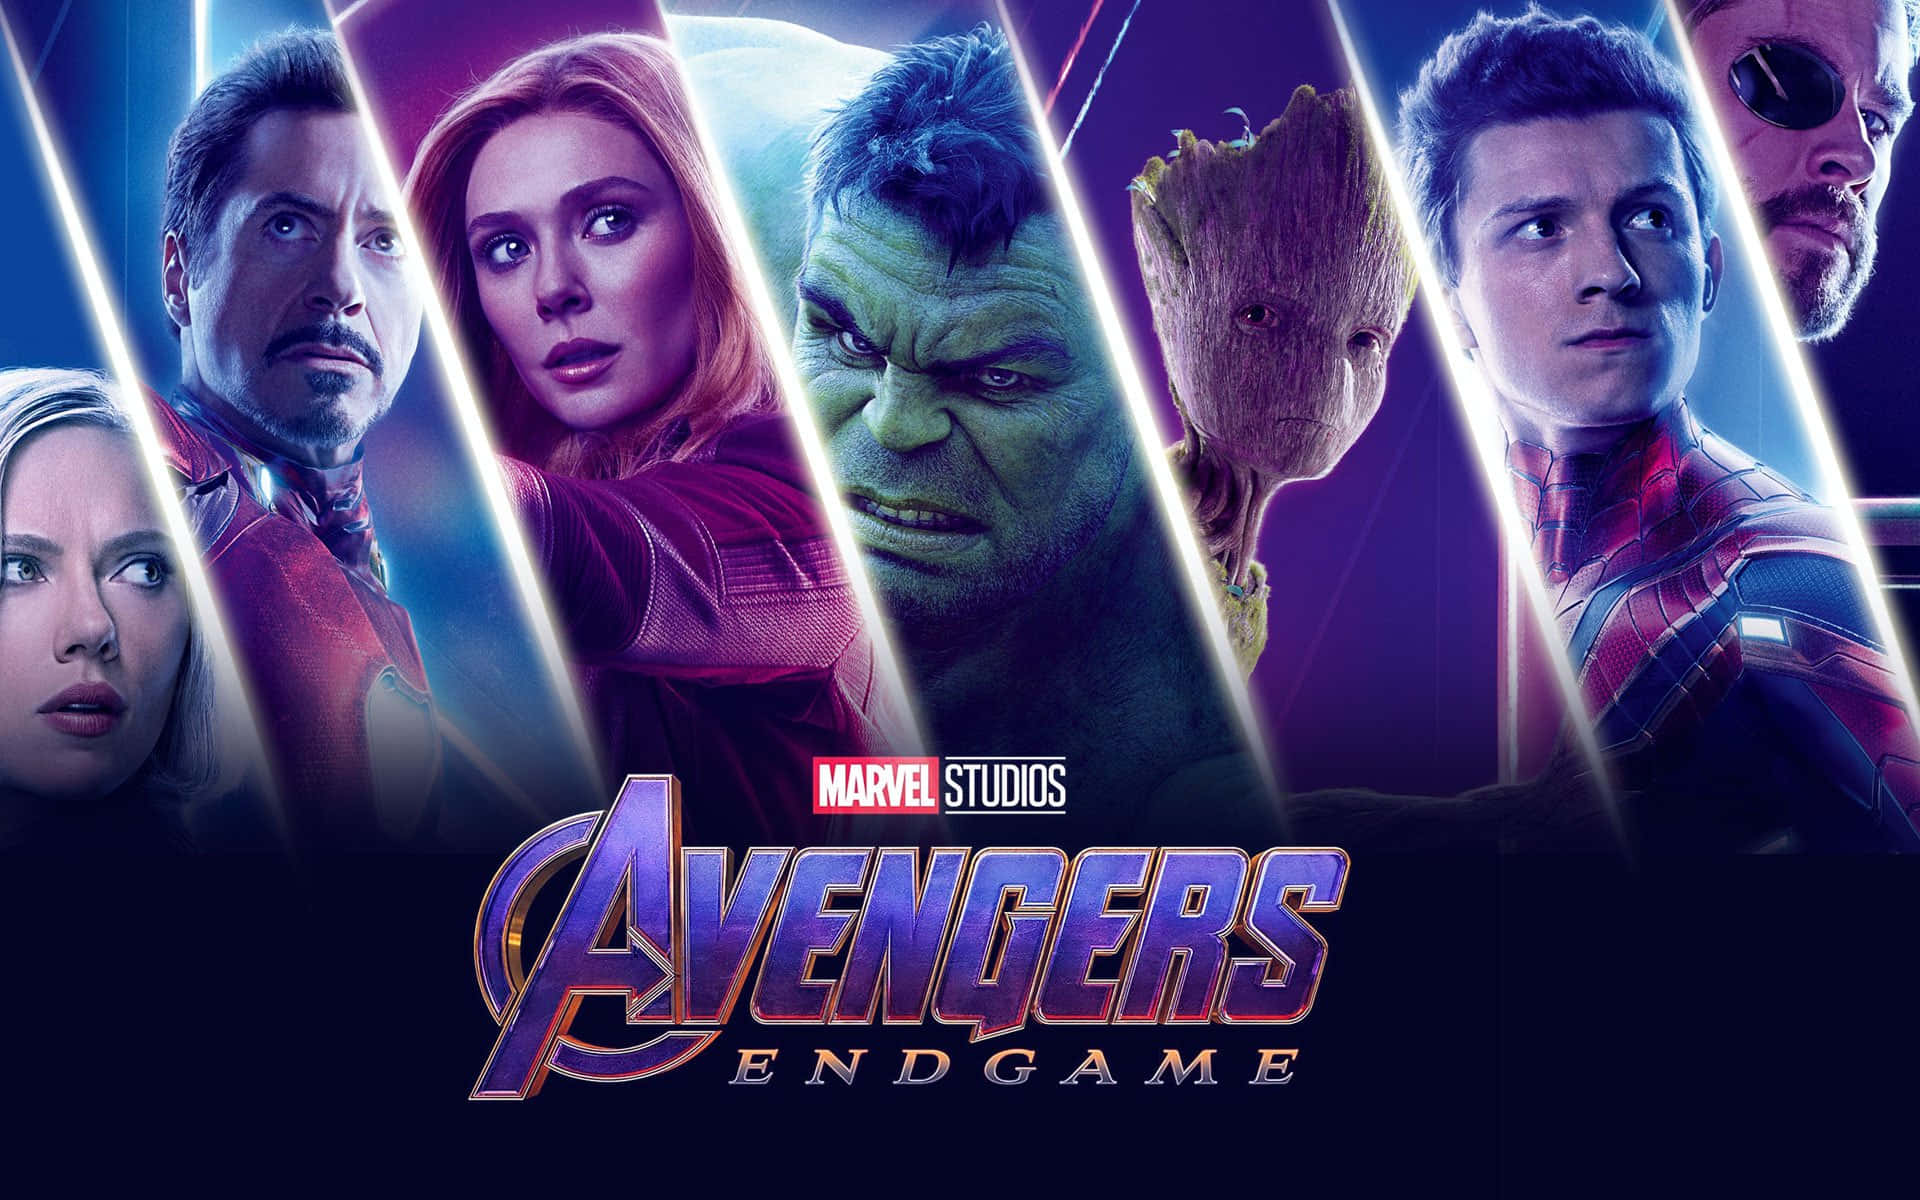 The Epic Battle: Avengers Endgame